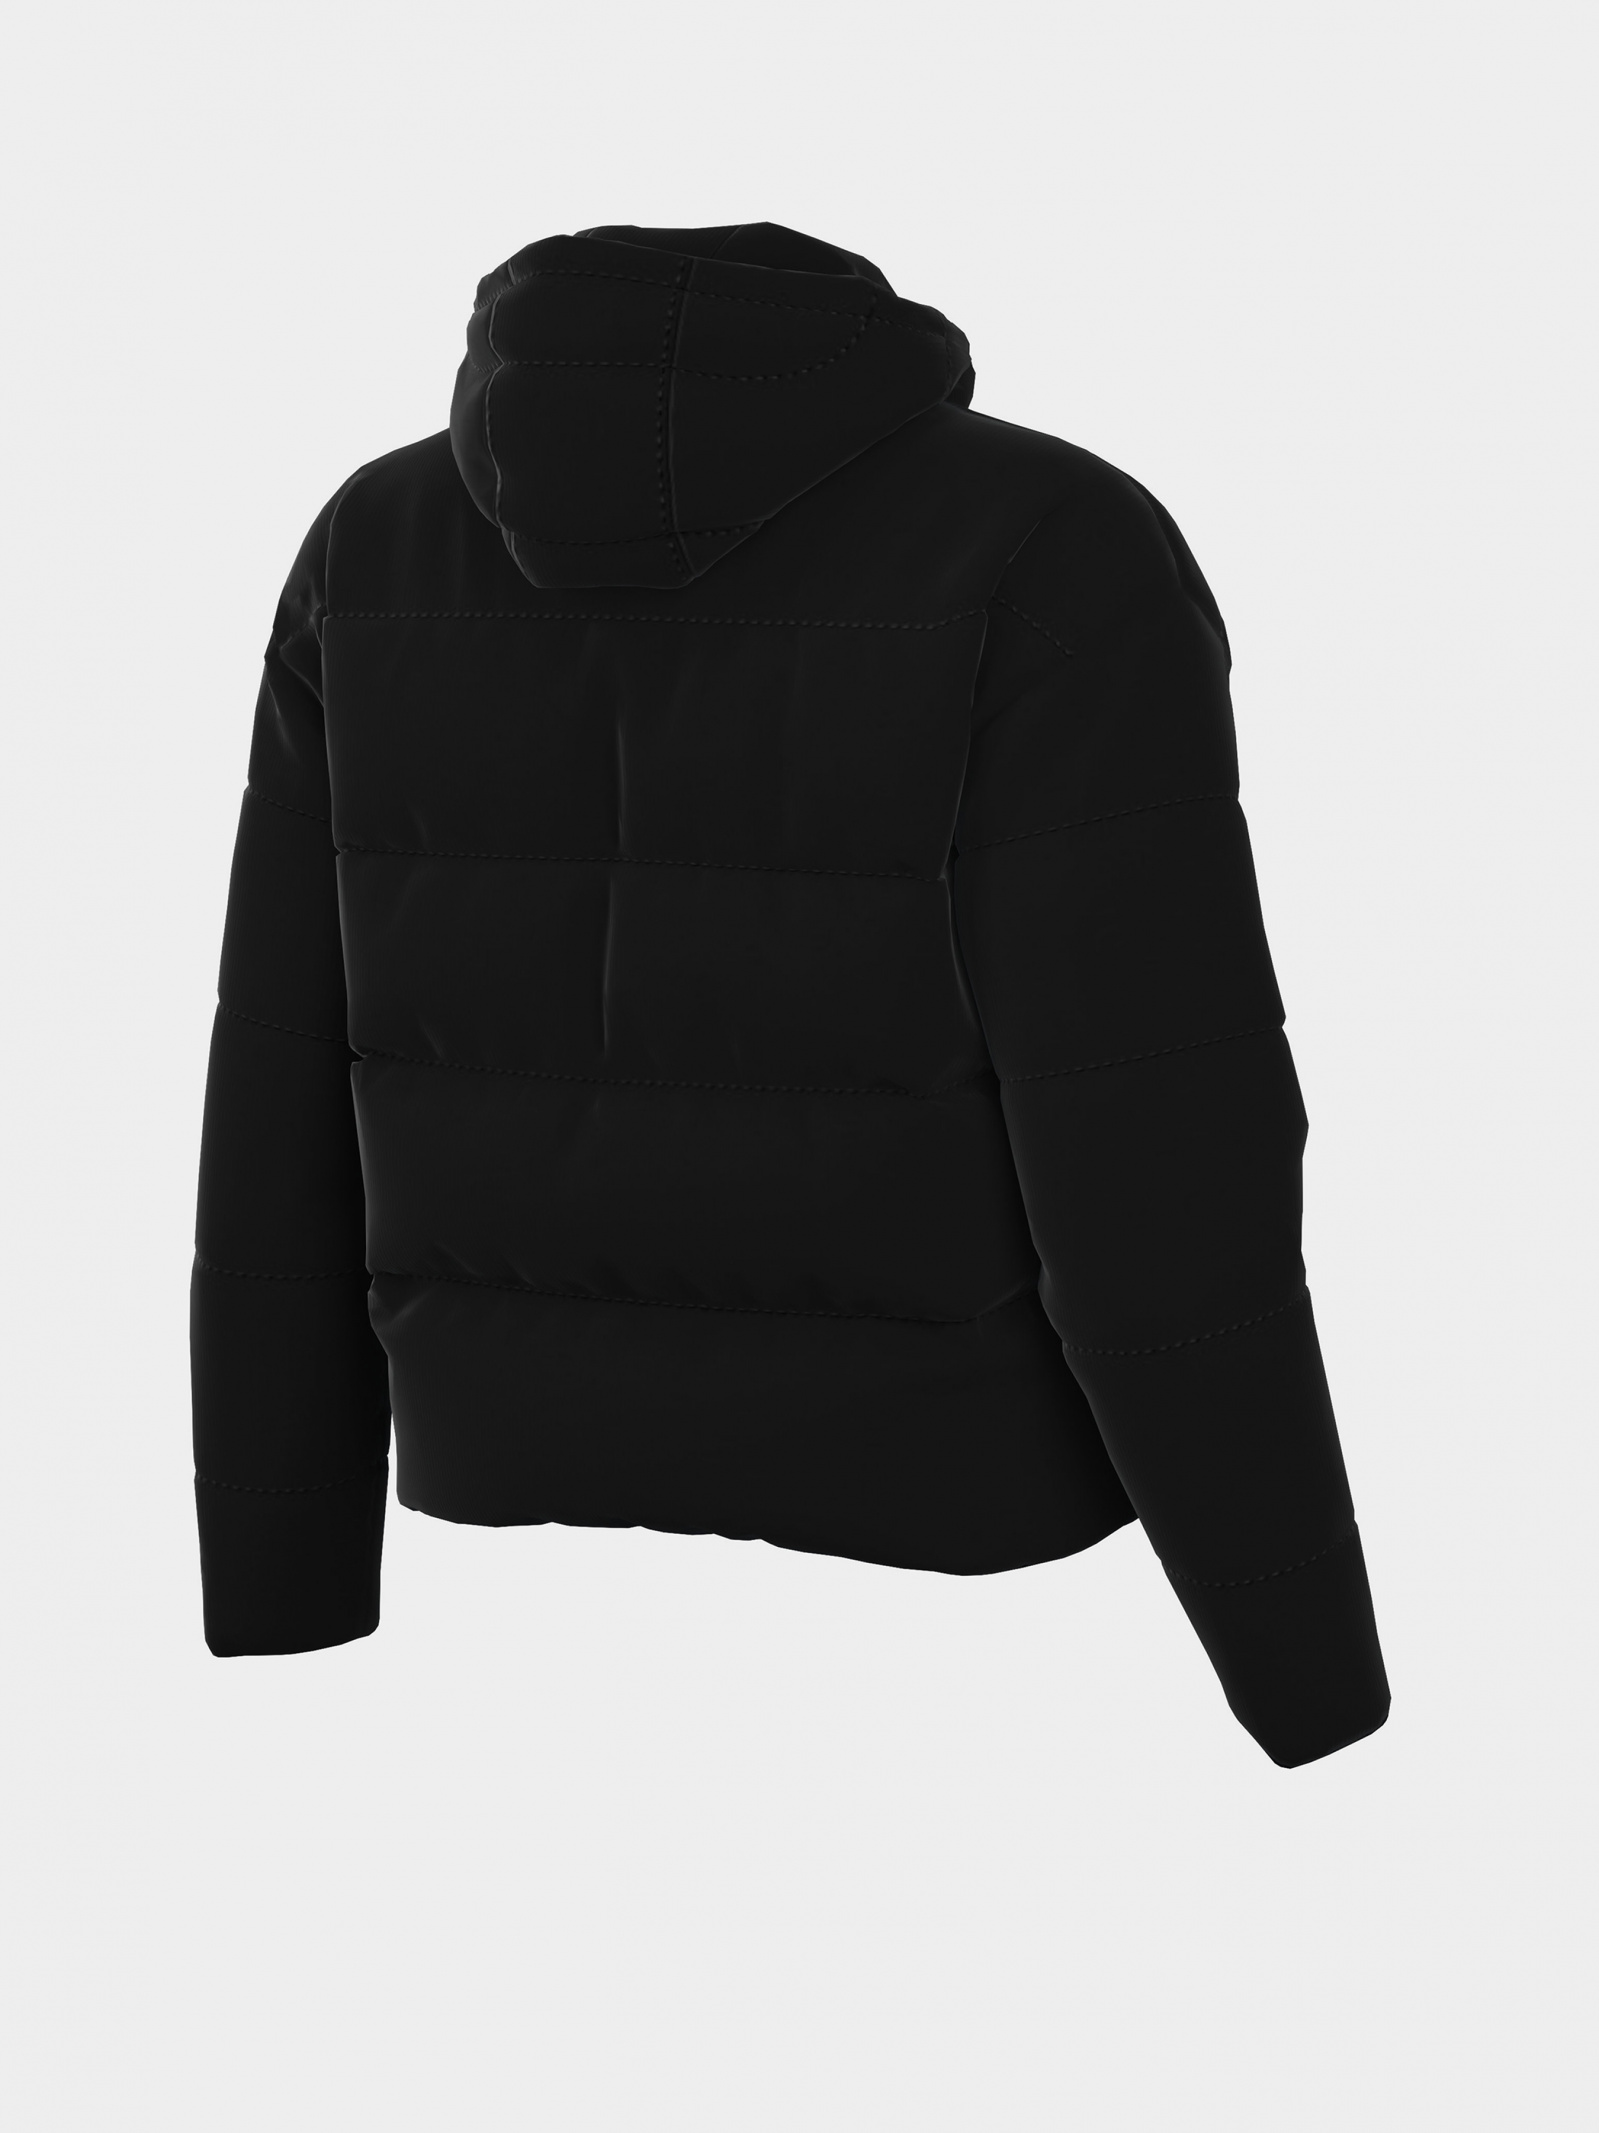 Зимняя куртка NIKE DX1797-010 для женщин, цвет: Чёрный - купить по выгодной  цене в Казахстане